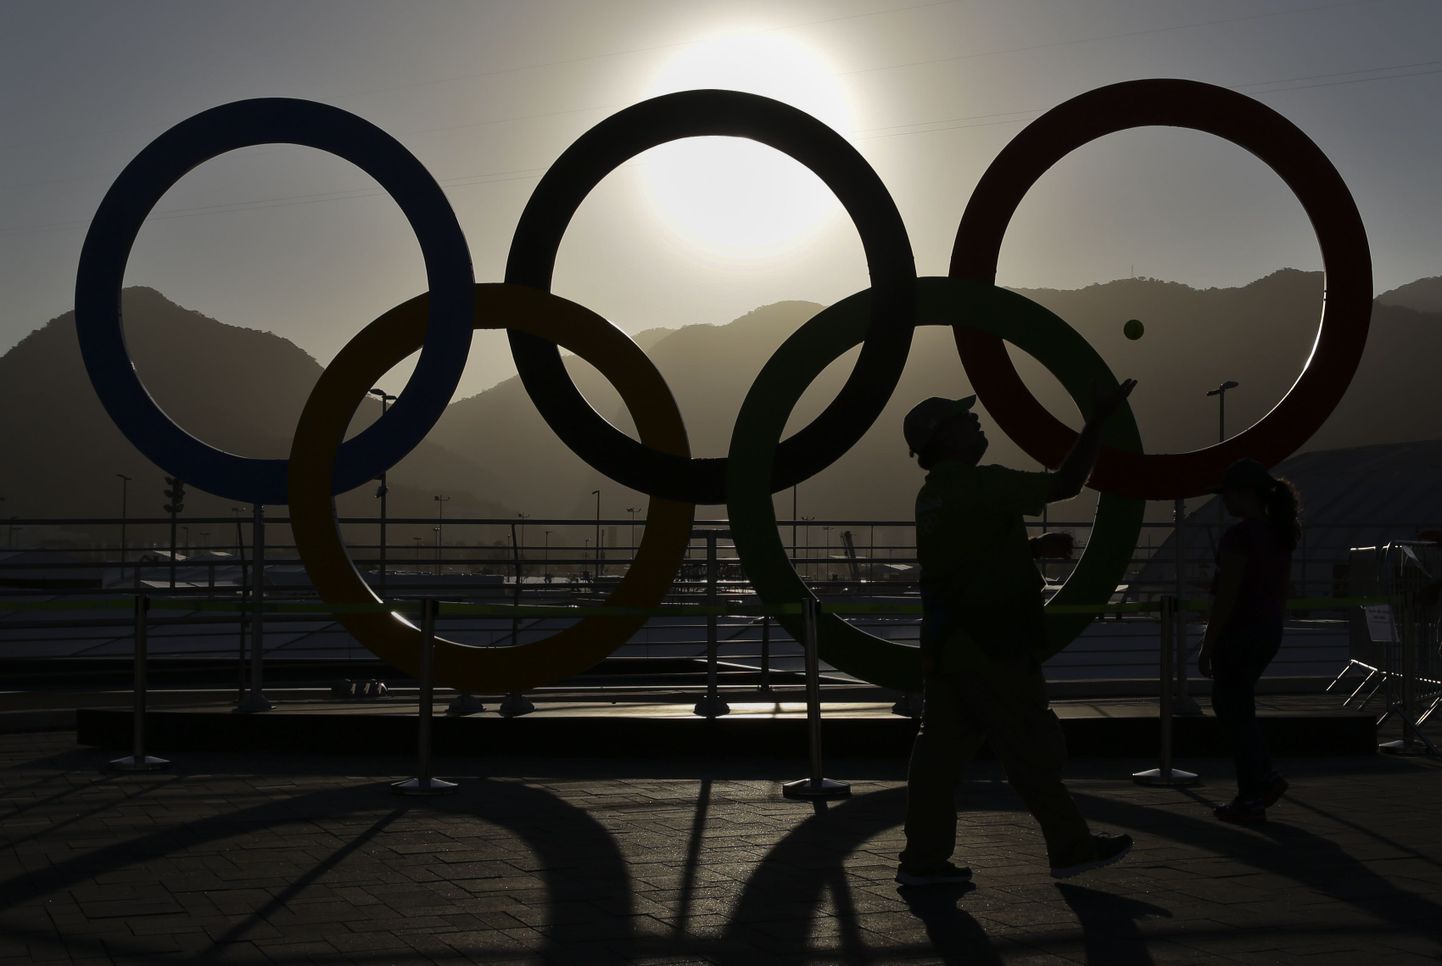 Järgmine taliolümpia on 2018. aastal Pyeongchangis, 2020. aastal peetakse suveolümpia Tokyos